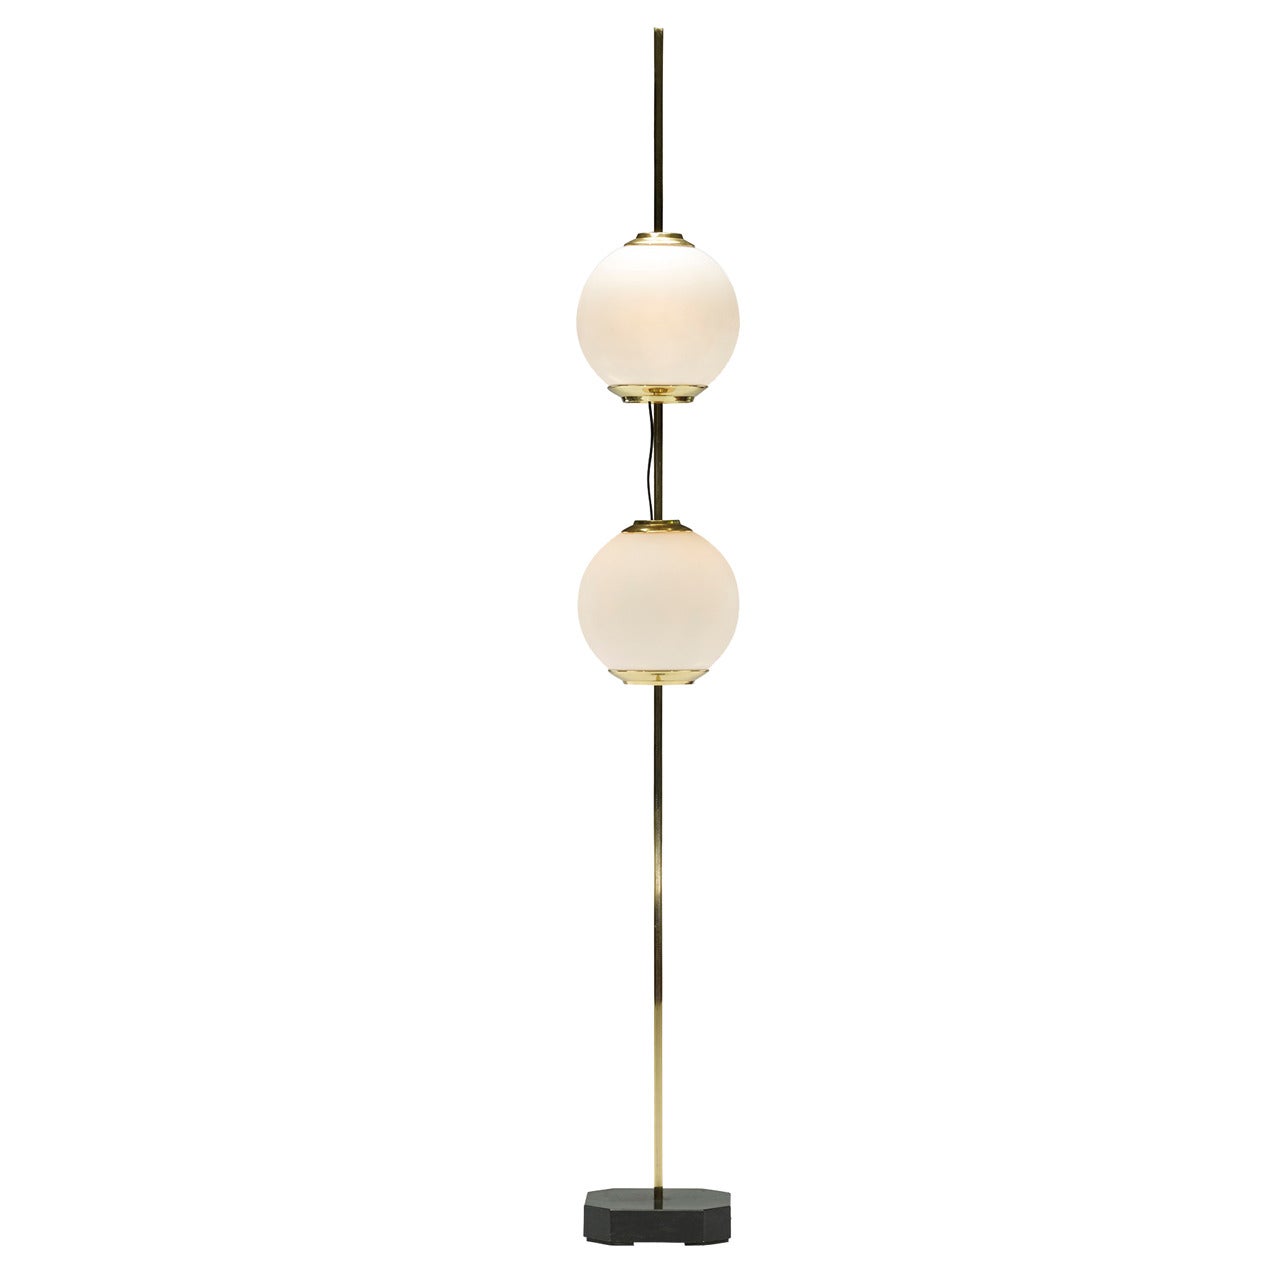 Doppio Pallone Floor Lamp, Model Lte 10 By Luigi Caccia Dominioni For Azucena